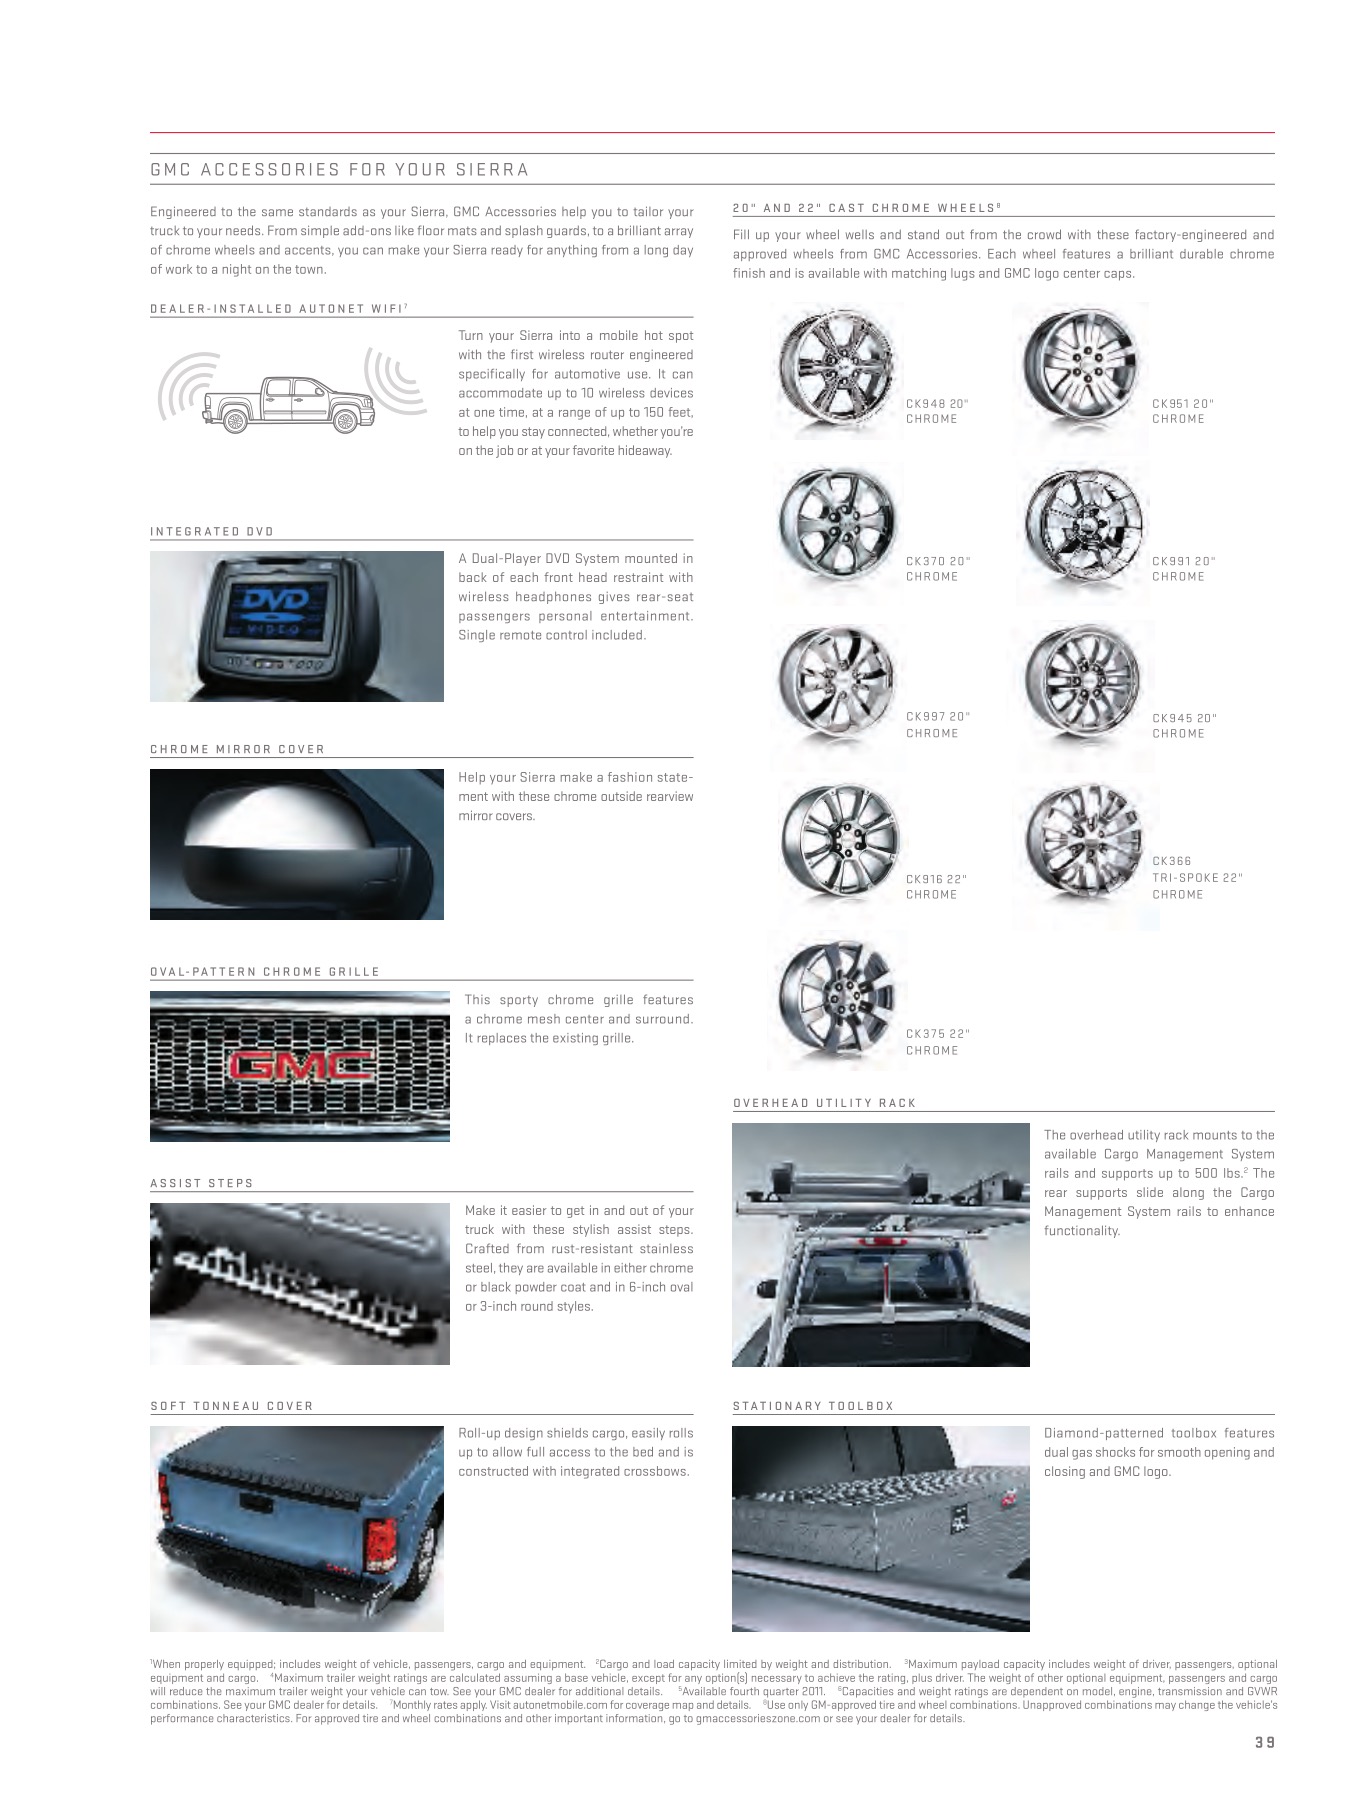 2012 GMC Sierra Brochure Page 2